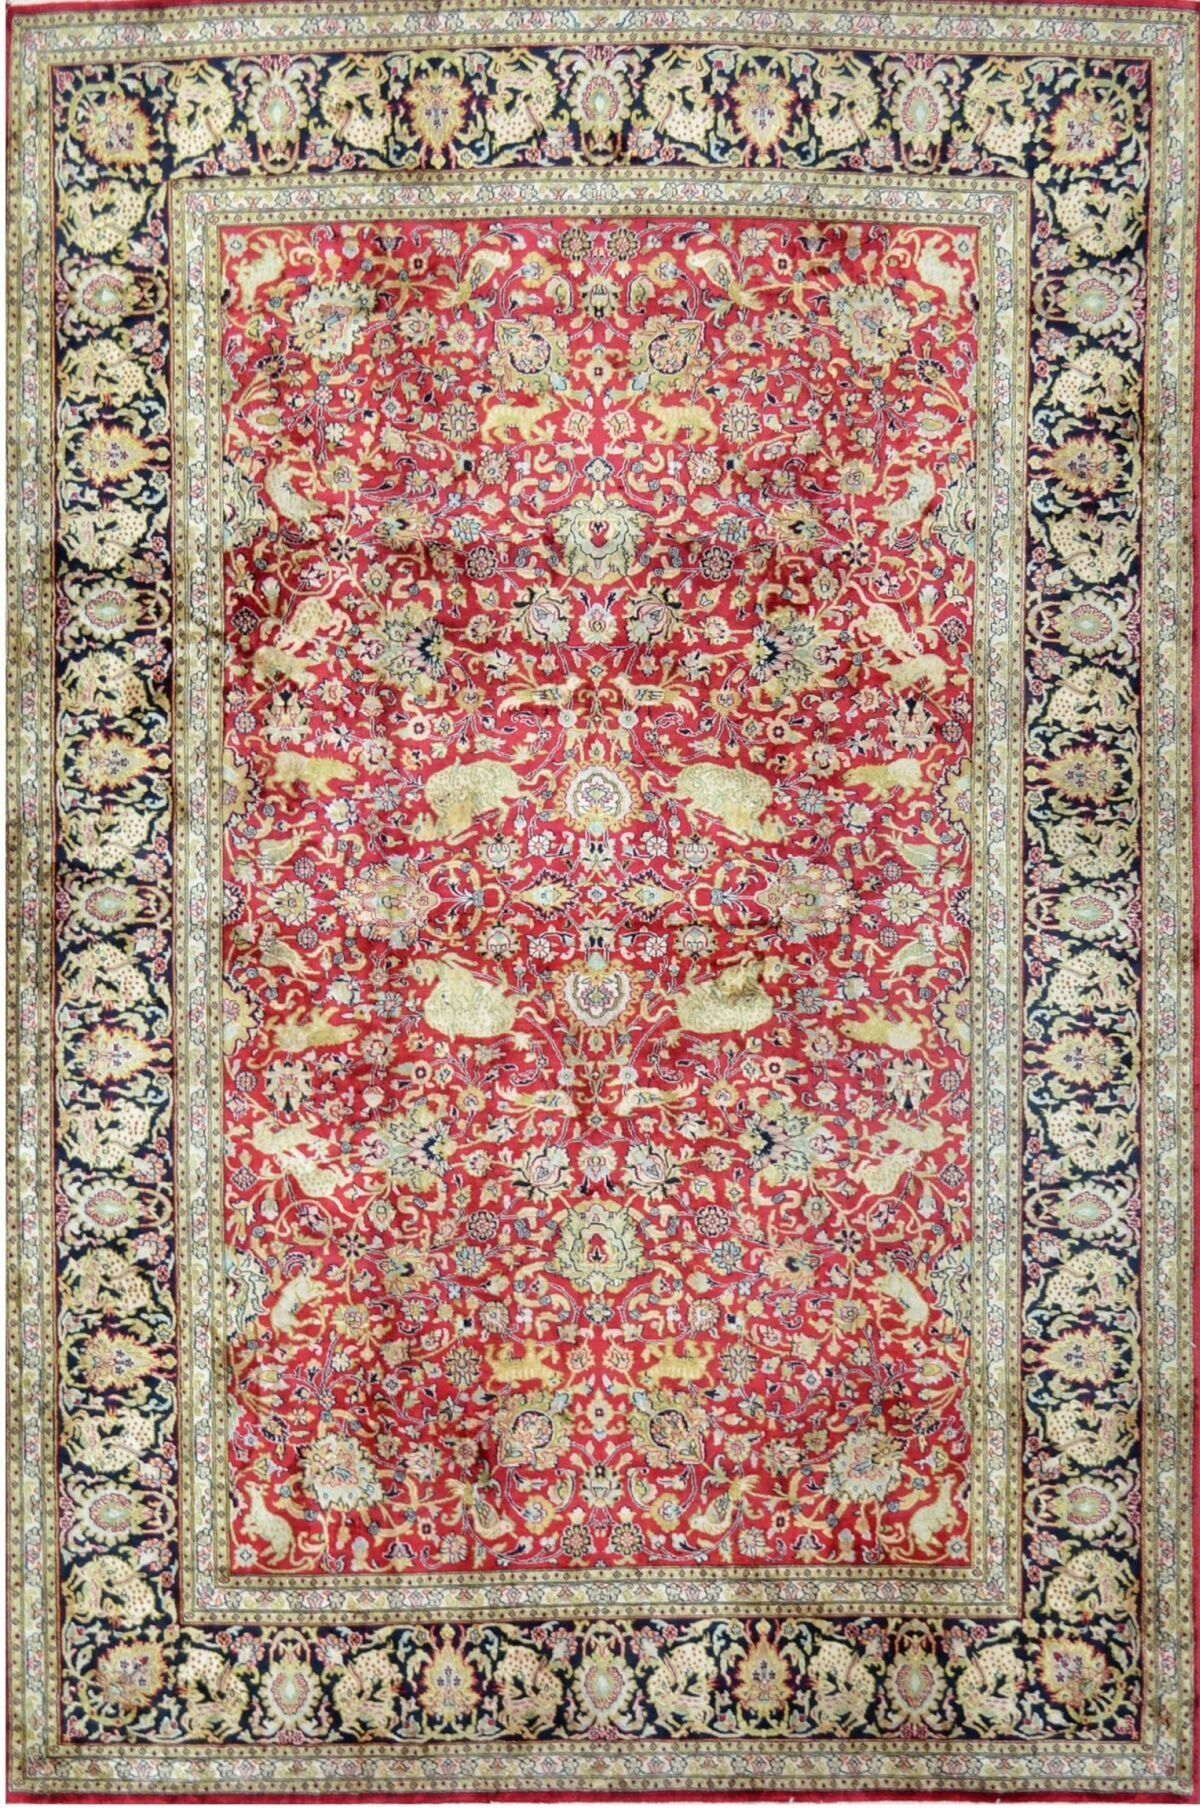 Null 丝绸基础上的大型精细丝绸和丝绒 Ghoum。装饰让人想起 17 世纪萨法维王朝的地毯。红宝石色的地毯上有原始的多色花球和棕榈装饰，周围环绕着多色造型的&hellip;